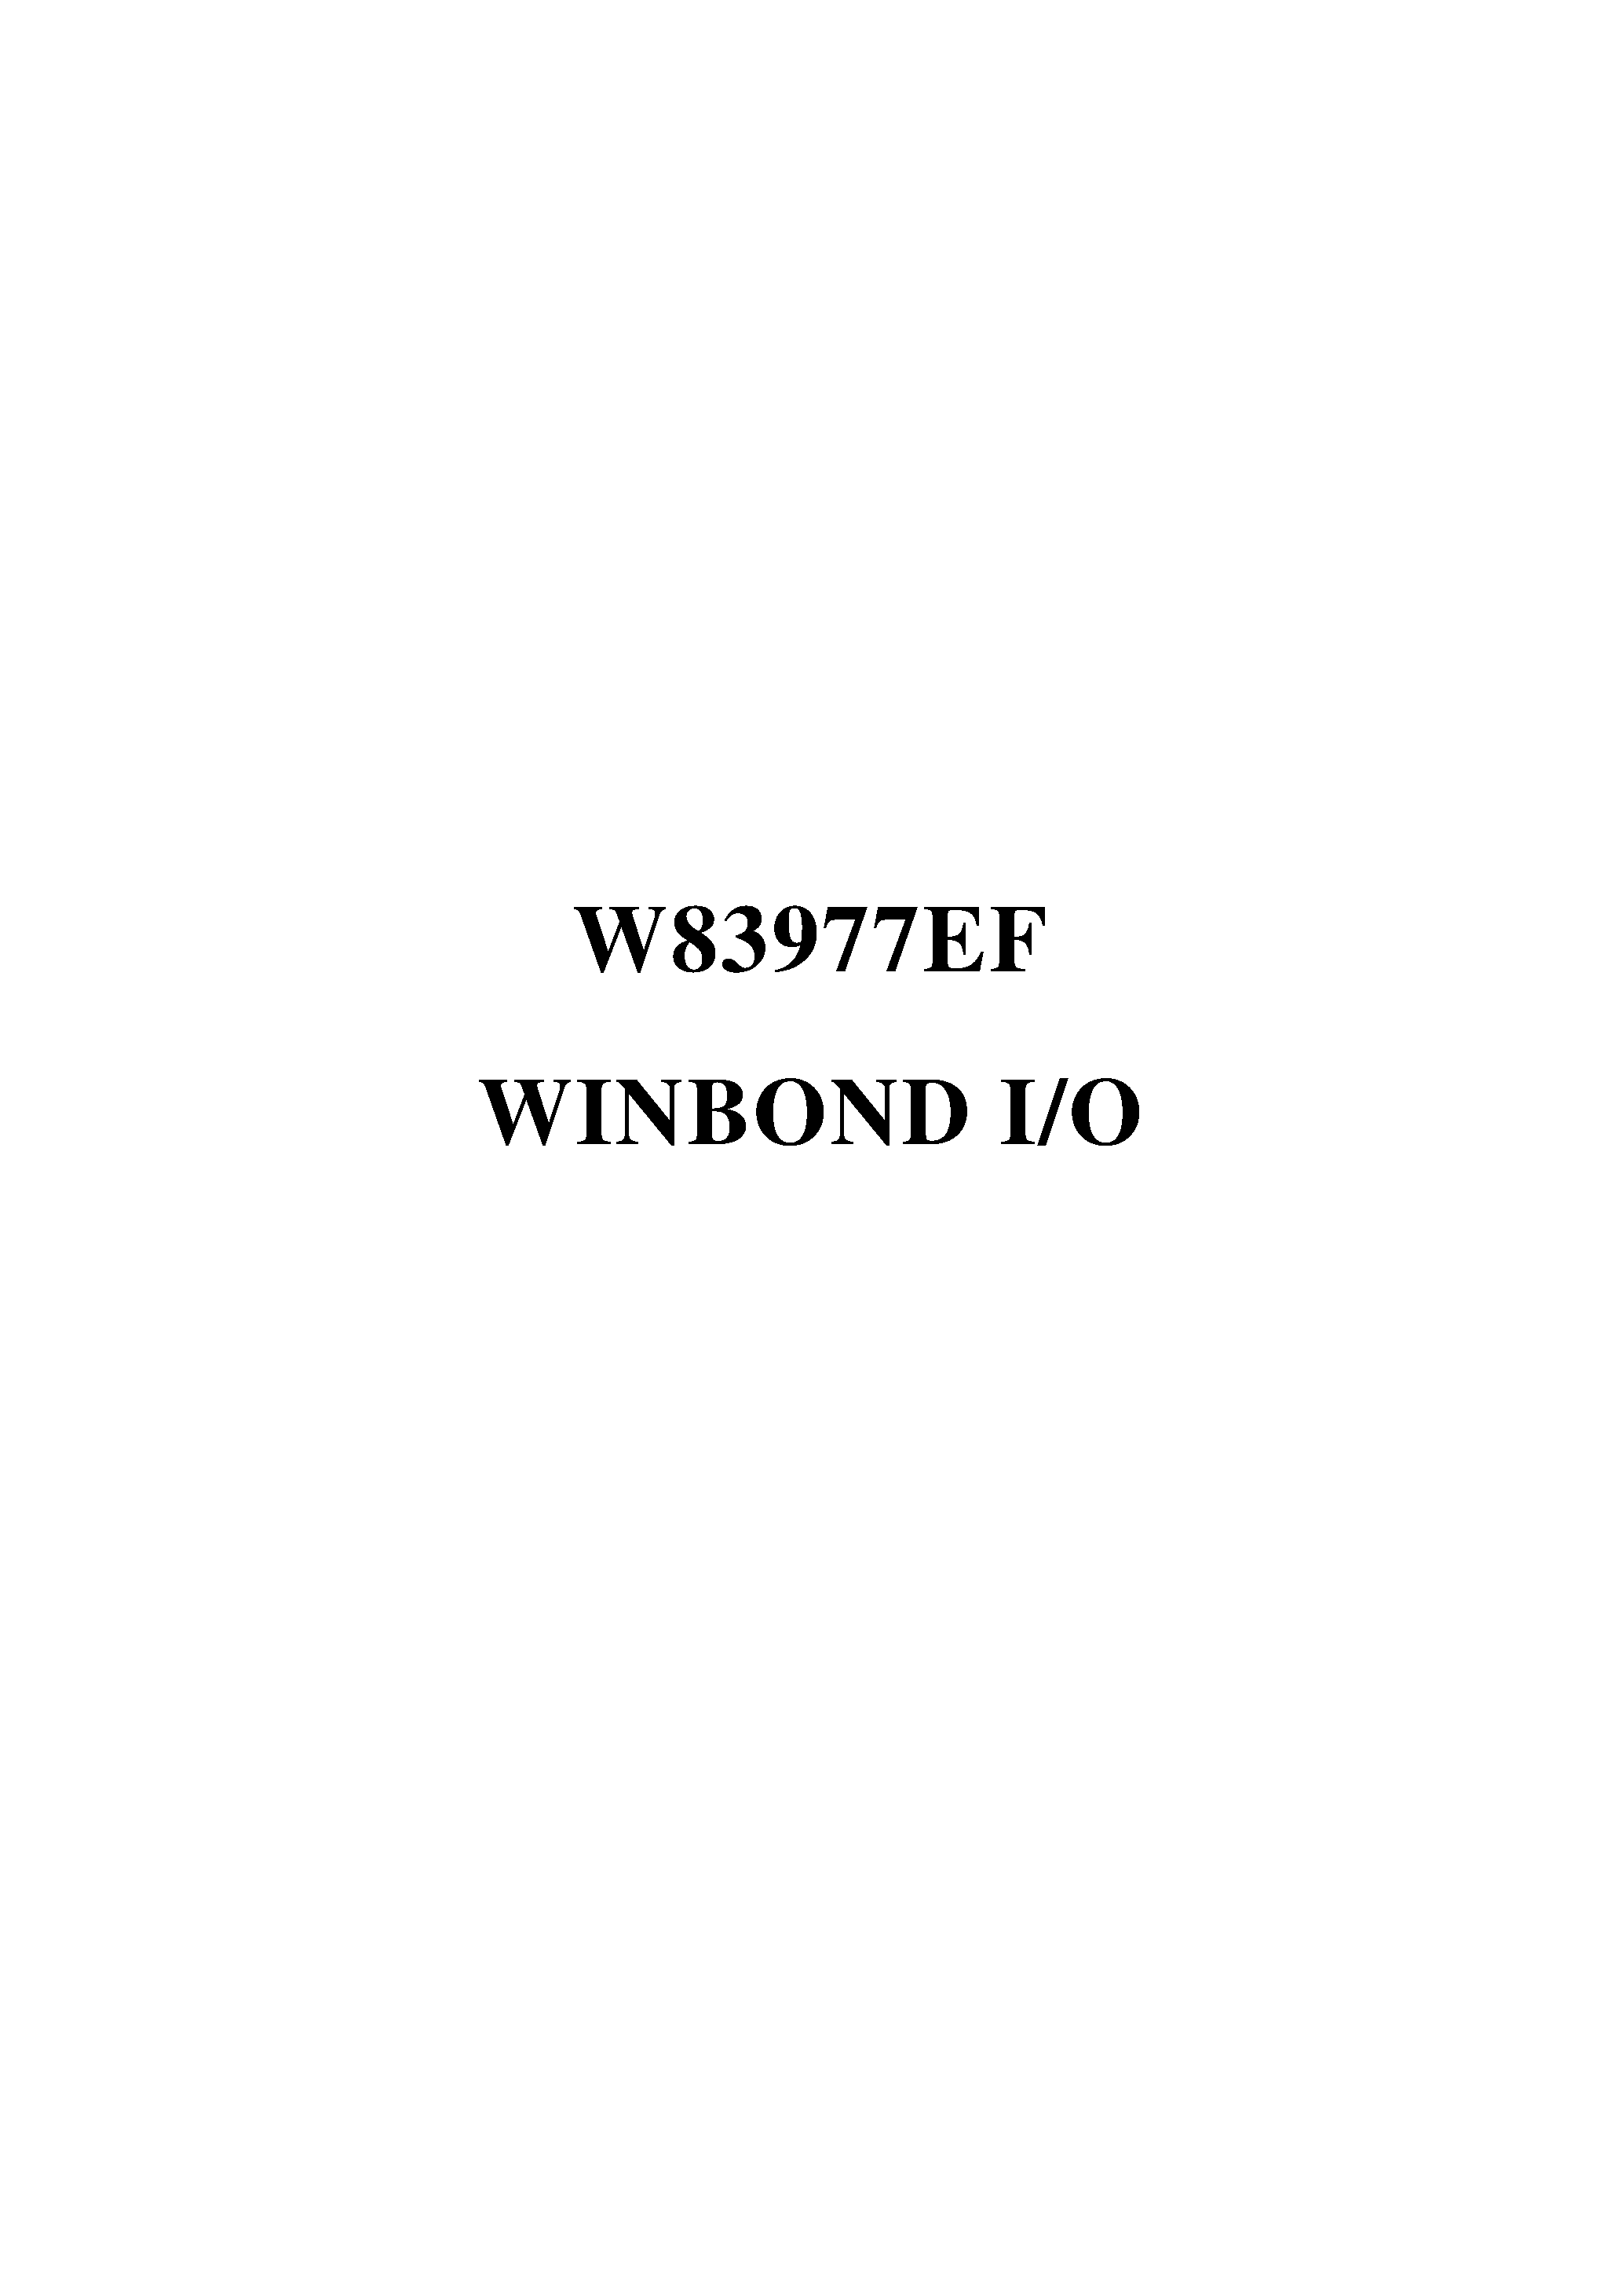 Datasheet W83977EF-PW - WINBOND I/O page 1